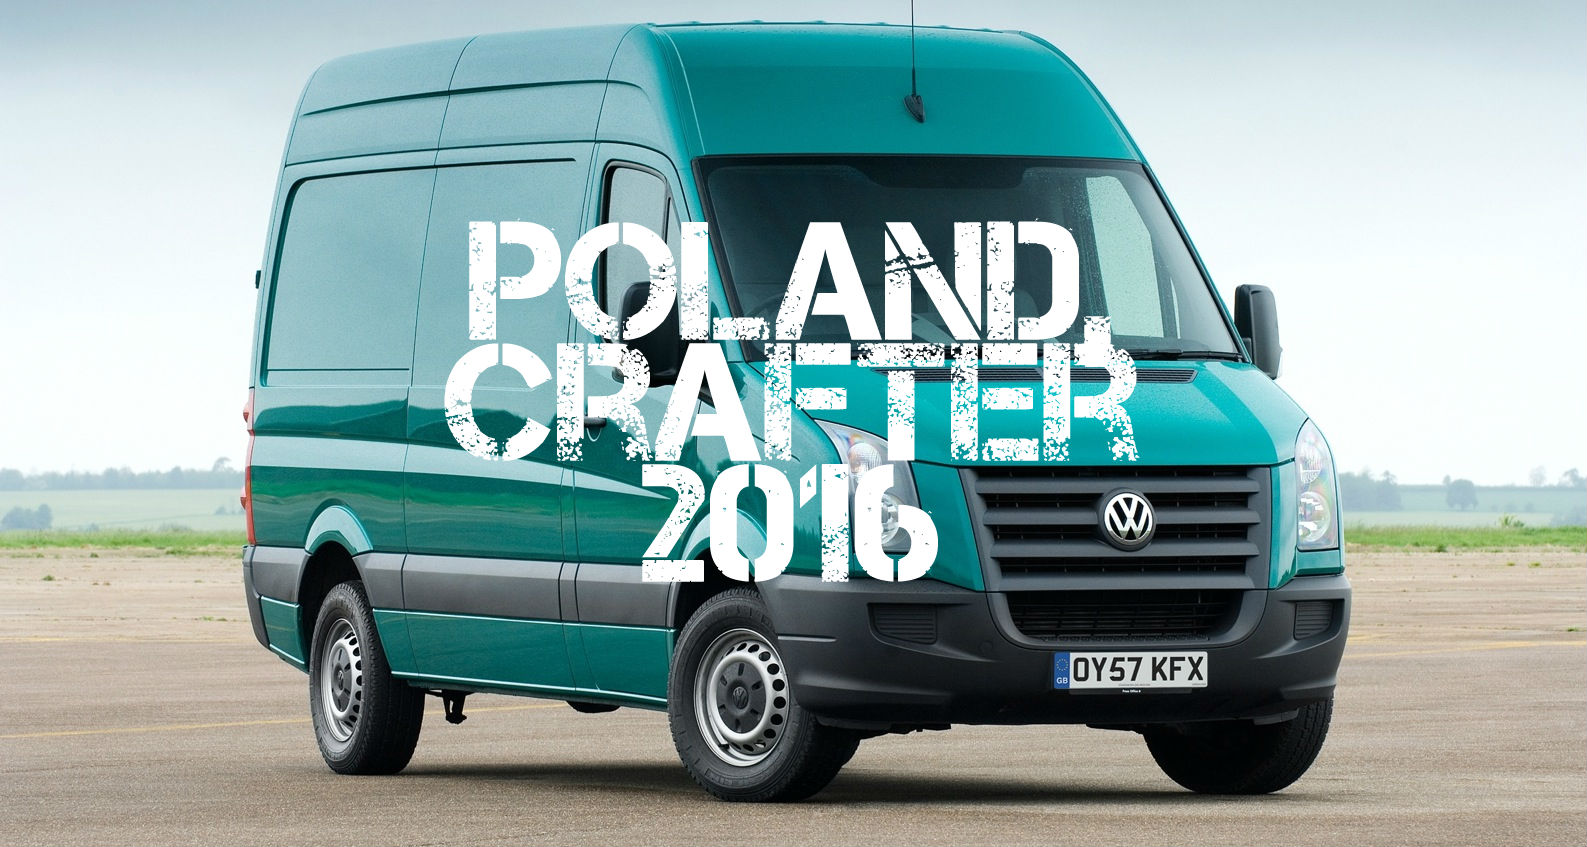 Volkswagen fabricará en Polonia el sucesor de la Crafter